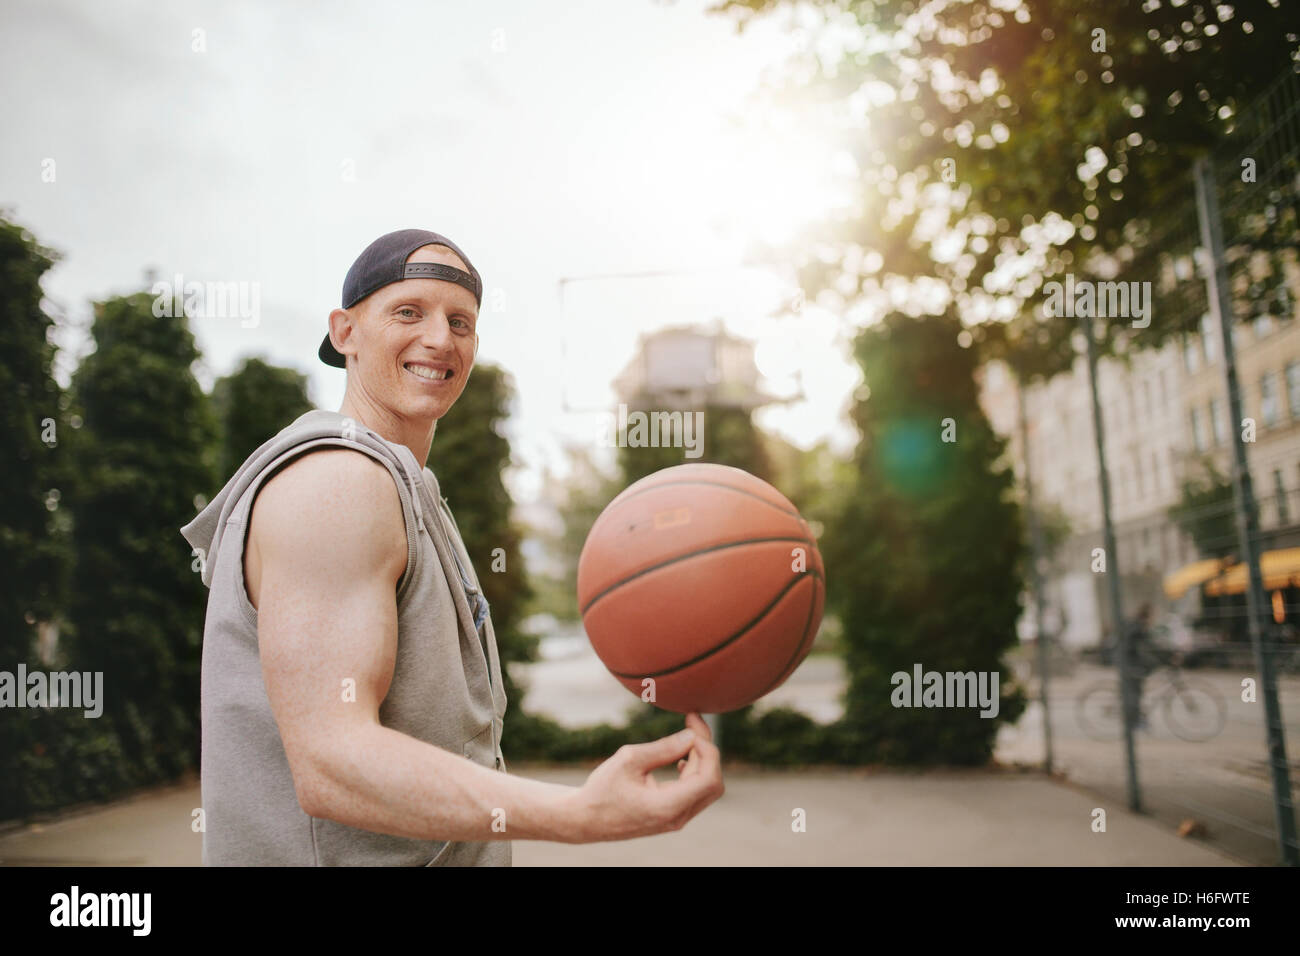 Portrait of smiling streetball player tourner la balle sur une cour. Heureux jeune homme basket-ball d'équilibrage sur son doigt. Banque D'Images